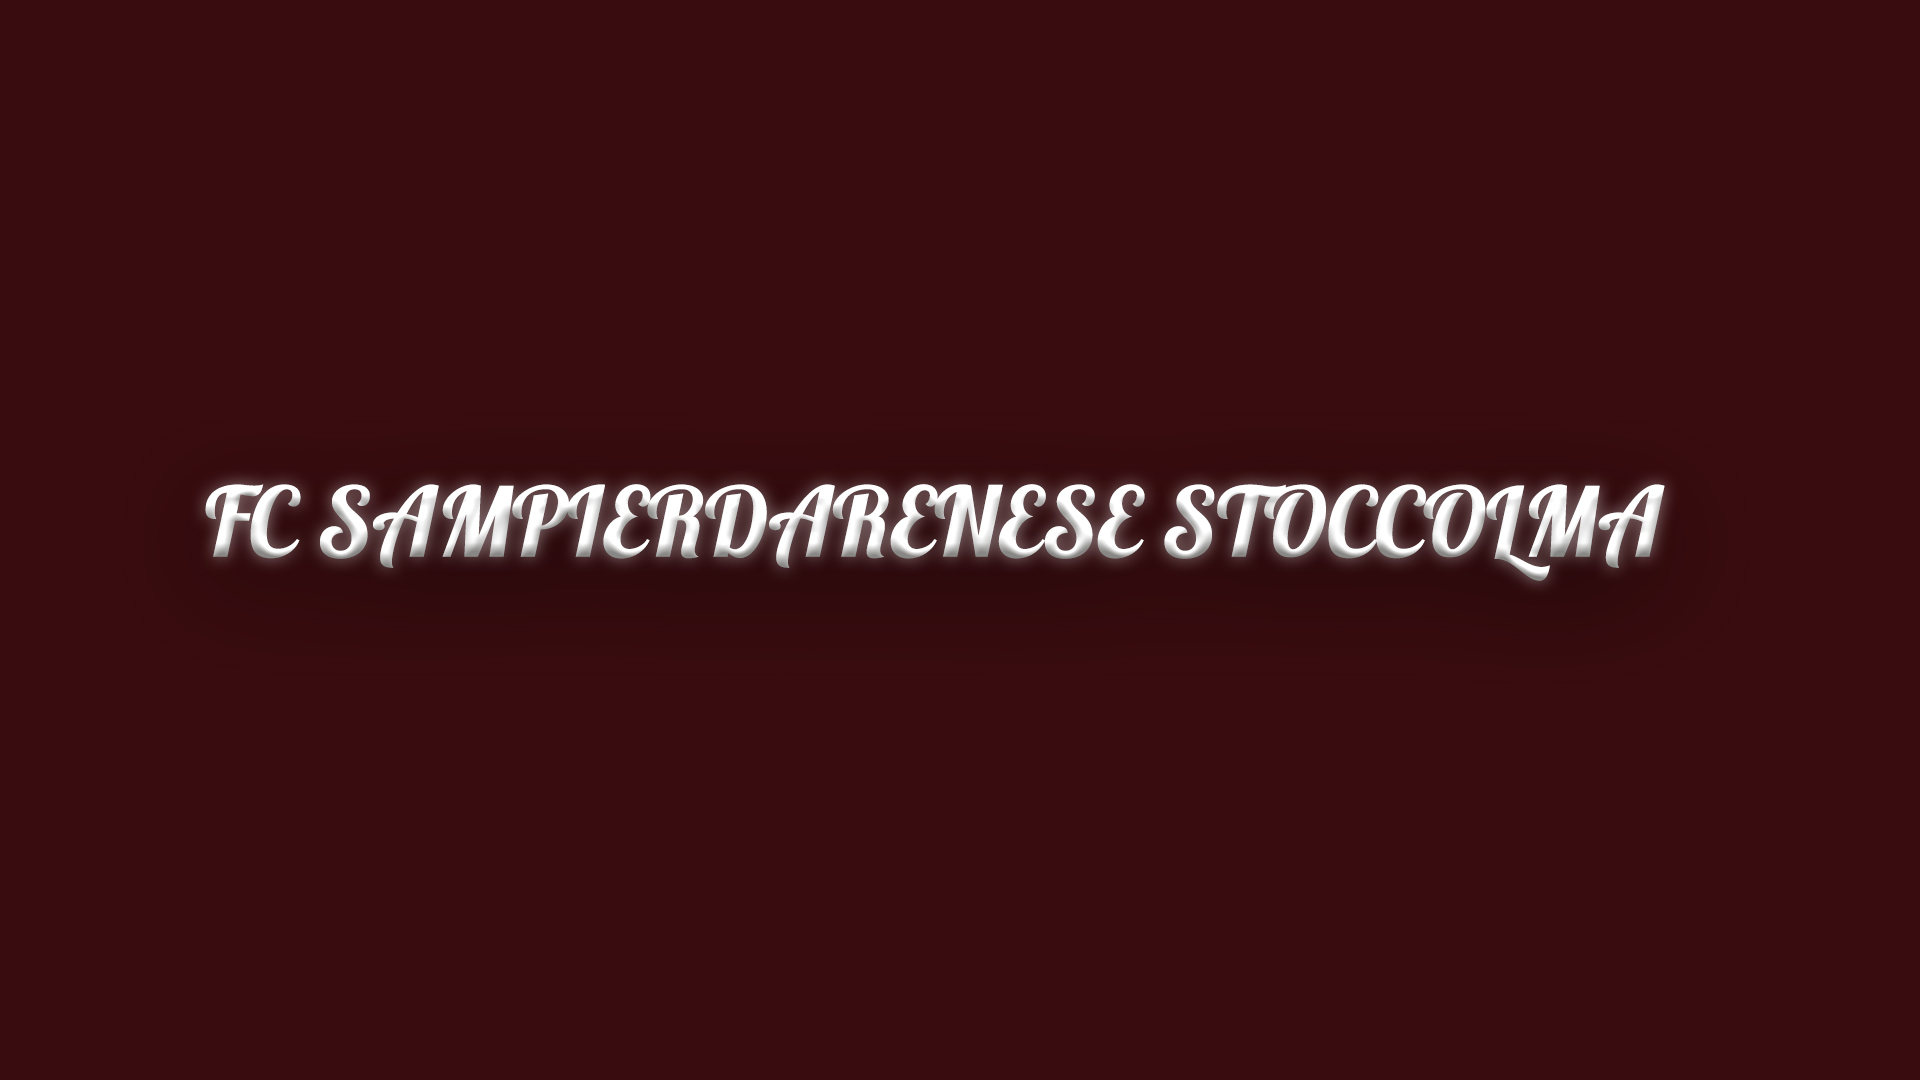 Du visar för närvarande Plattmatch av FC Sampierdarenese